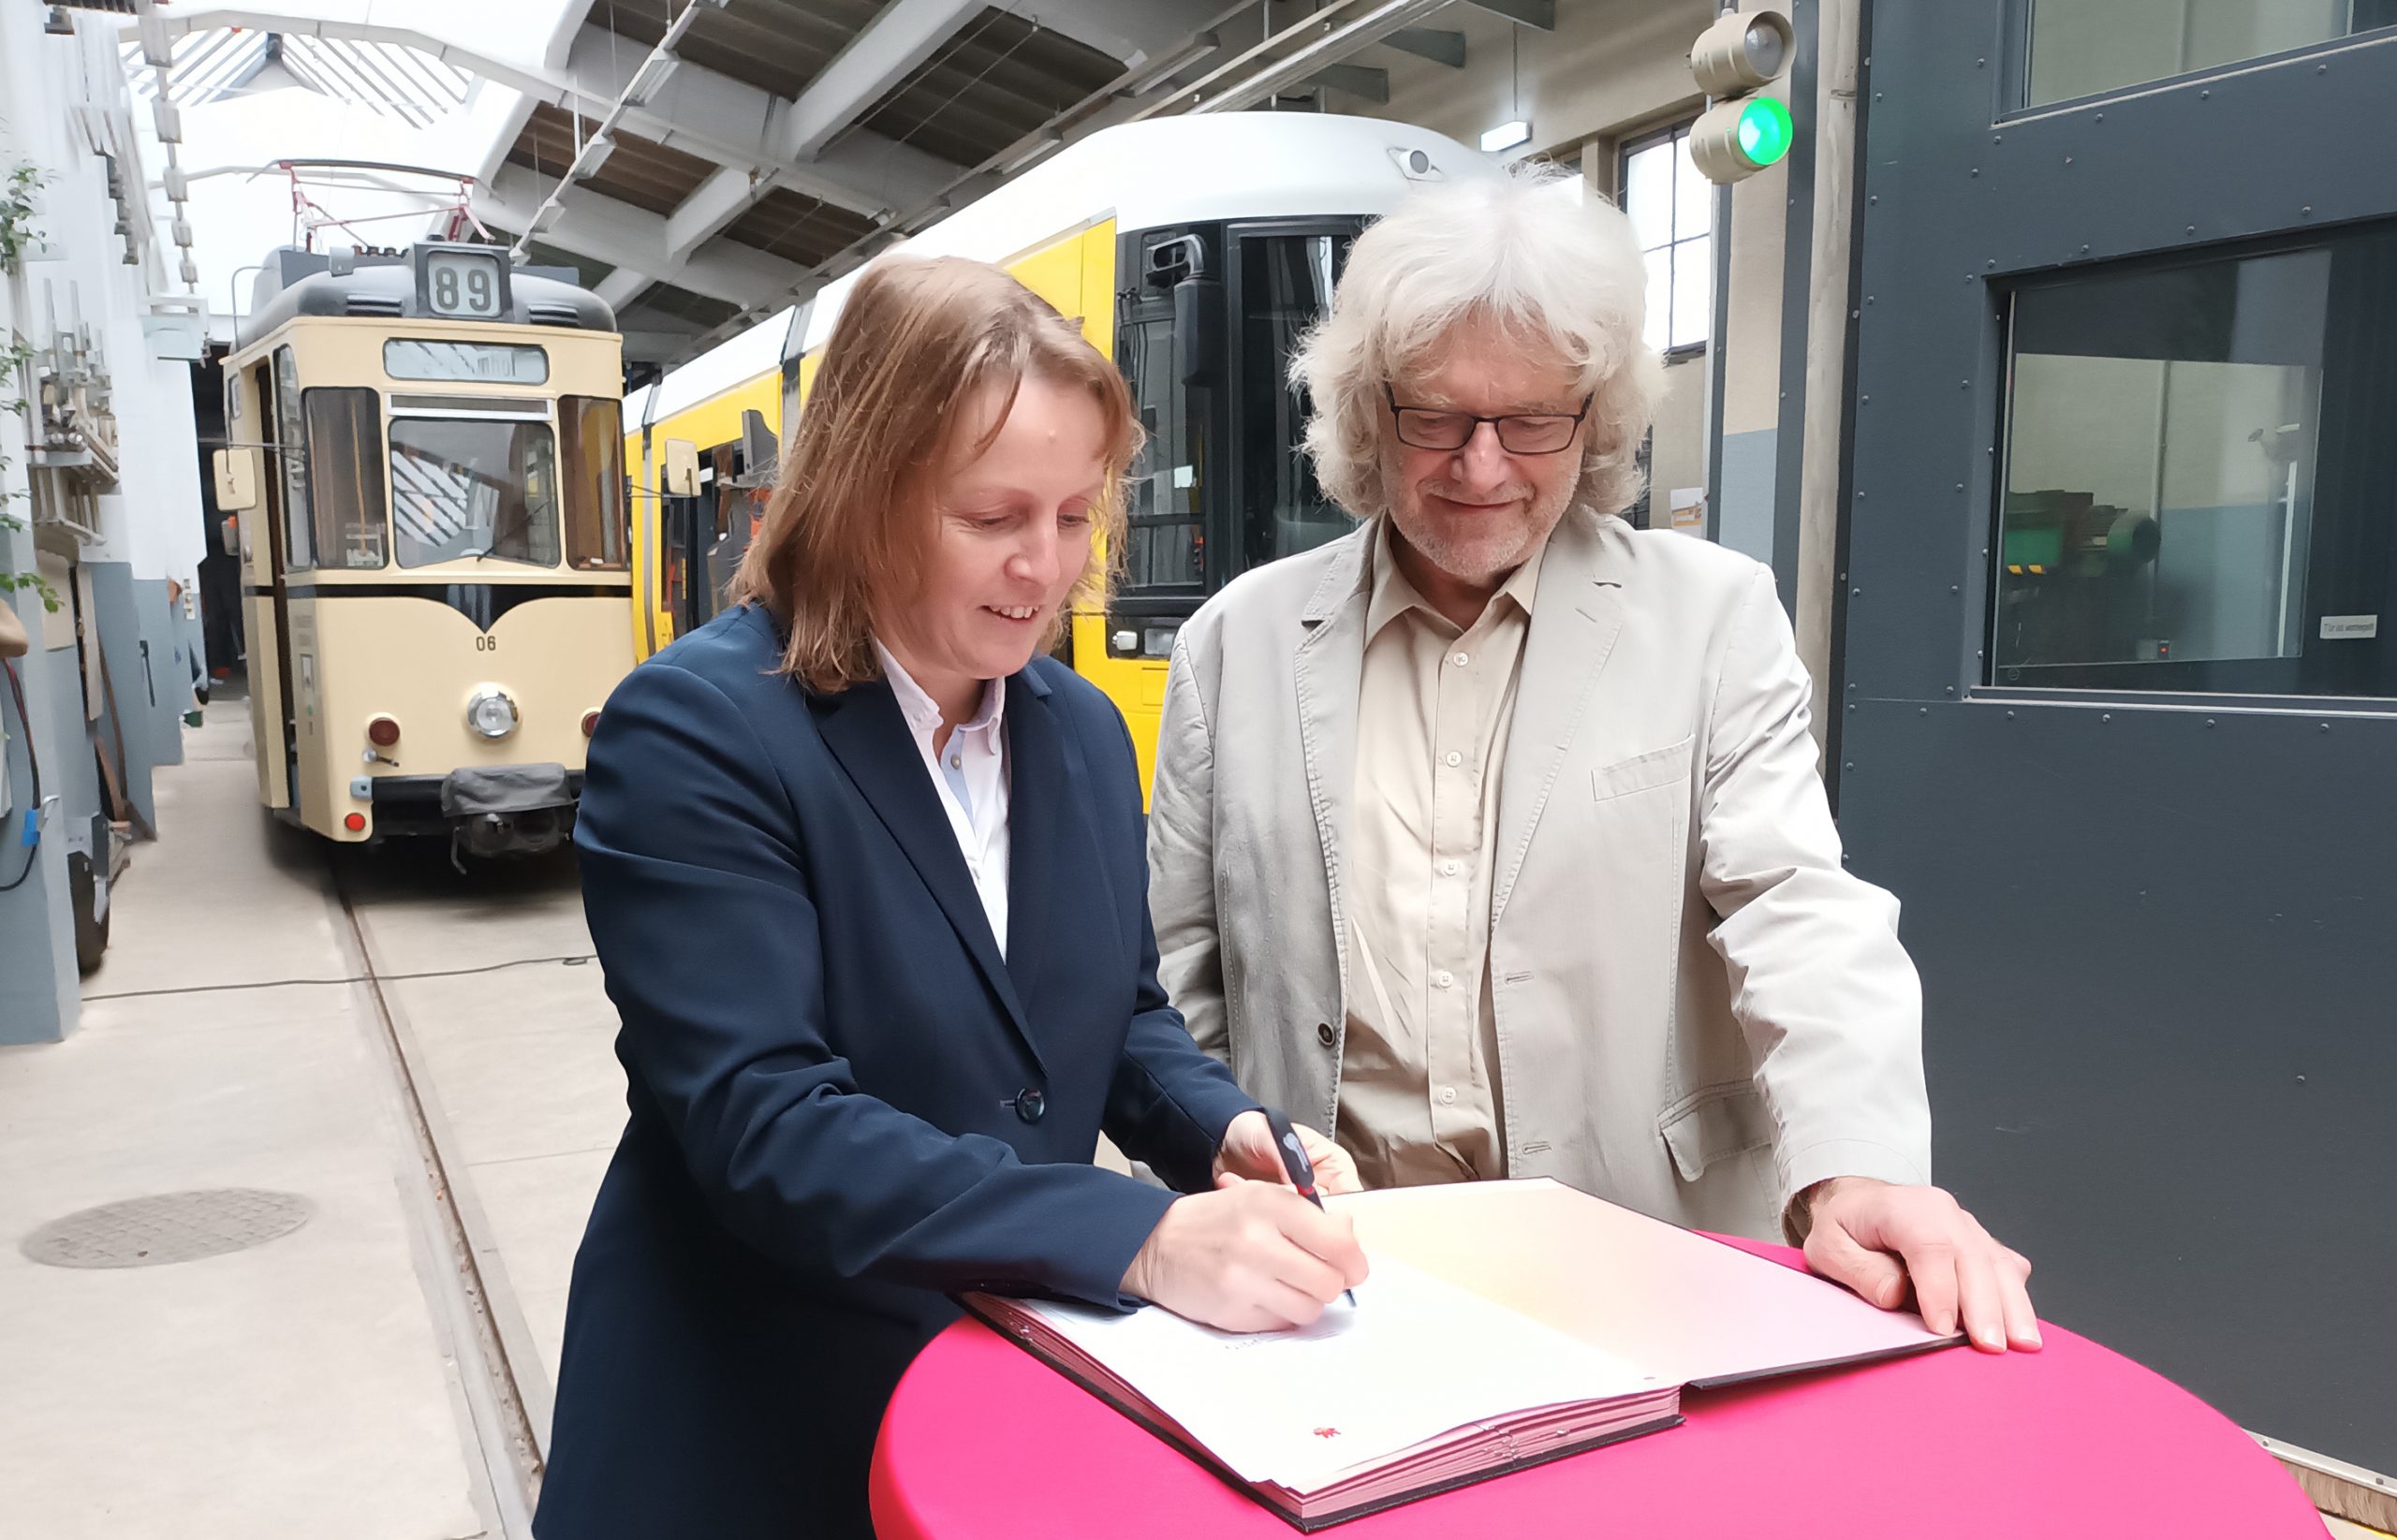 Irina Kühnel, Chefin der Strausberger Eisenbahn, und Vizelandrat Rainer Schinkel unterzeichnen den neuen Verkehrsleistungs- und Finanzierungsvertrag für die Tram 89 und die Fähre